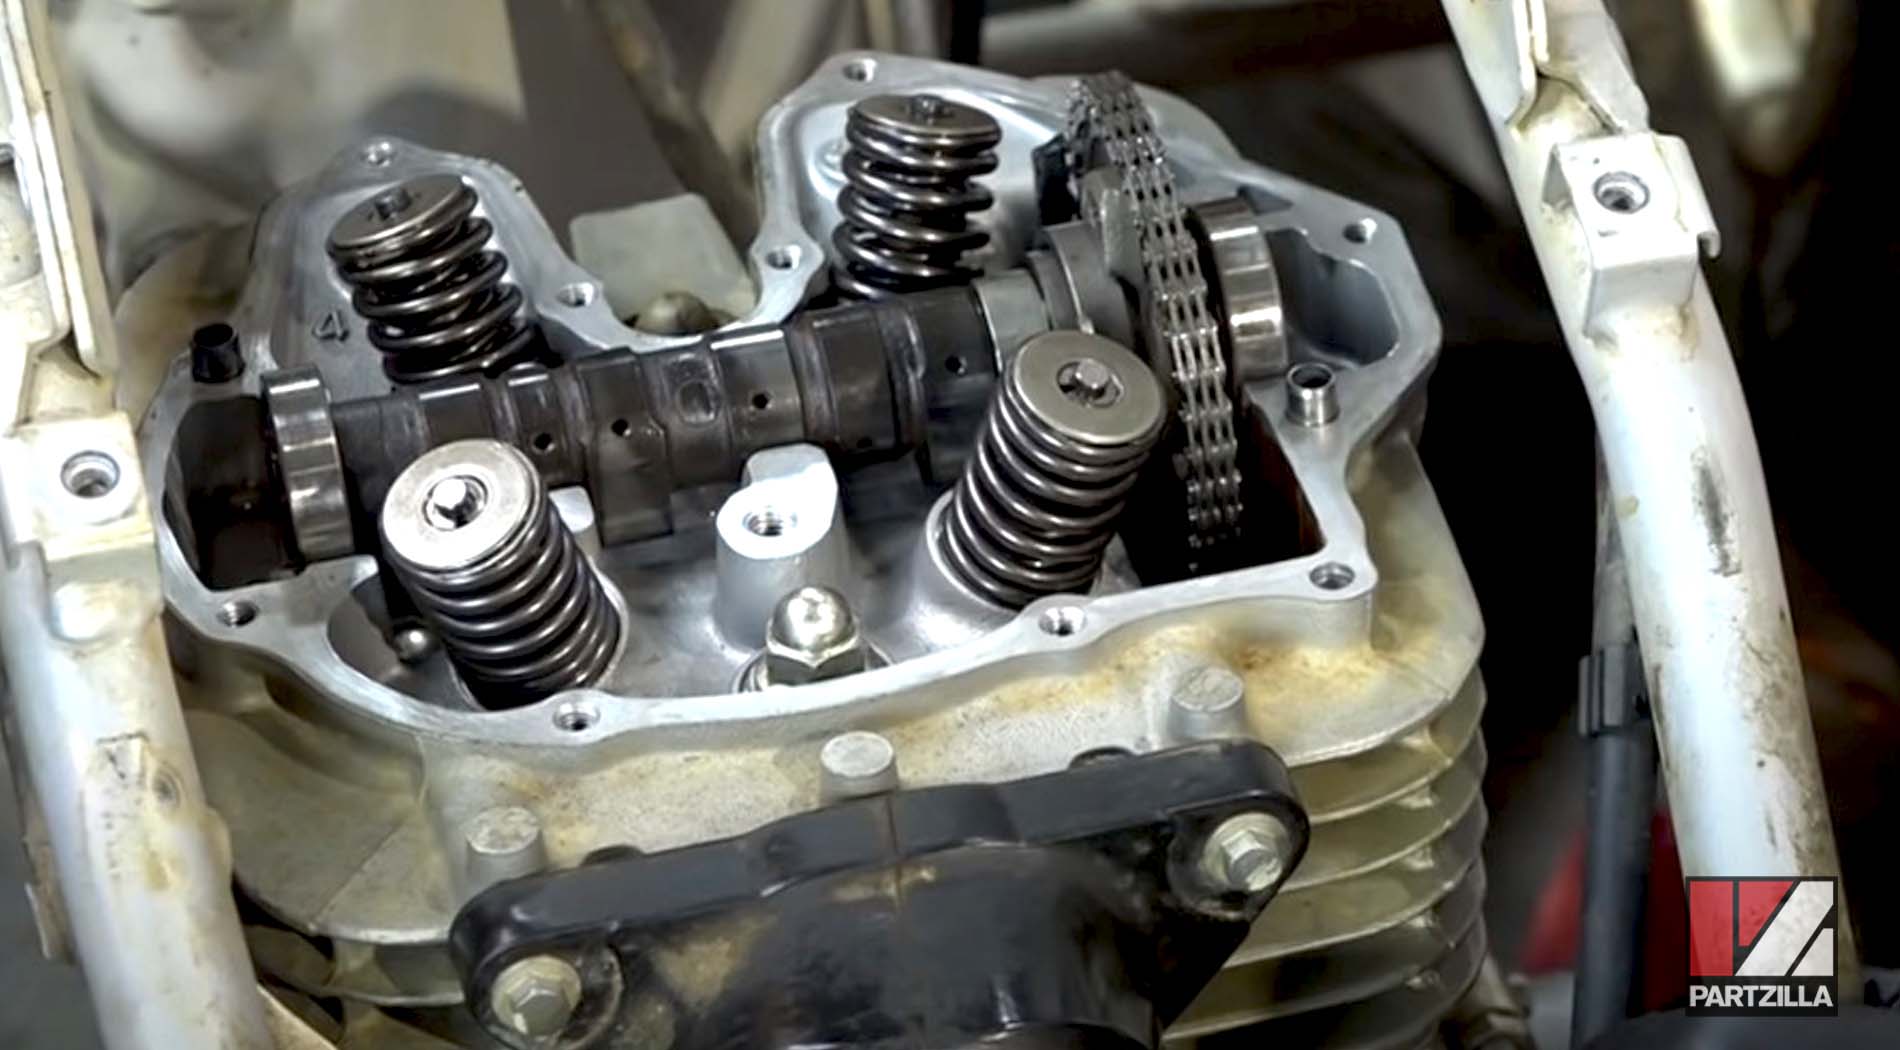 Honda TRX400EX engine rebuild camshaft installed